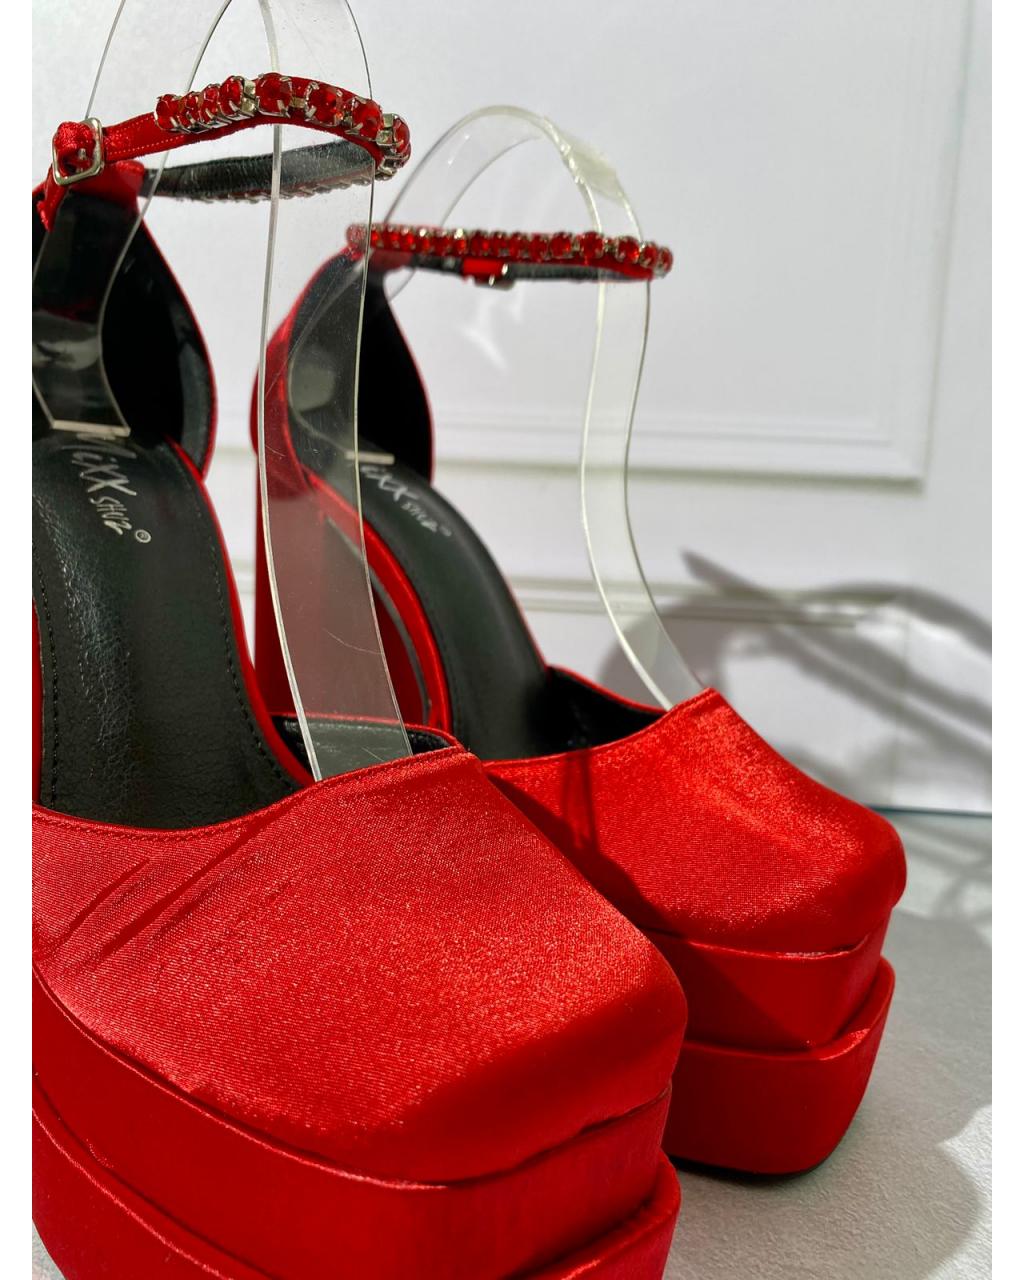 Zapatos rojos (producto en final)